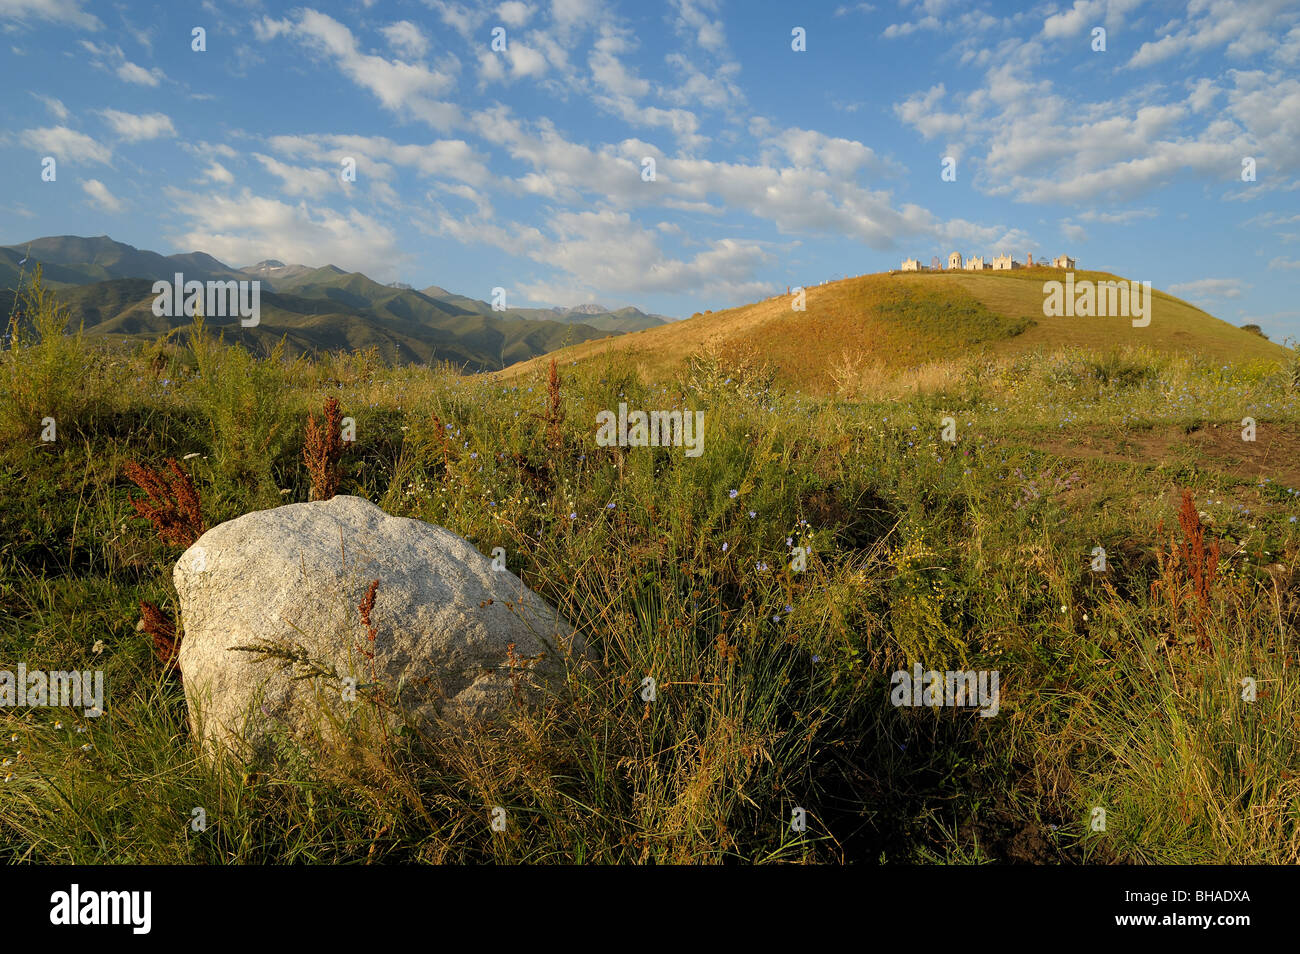 Landschaft mit Stein und kirgisischen Friedhof auf dem Hügel Stockfoto